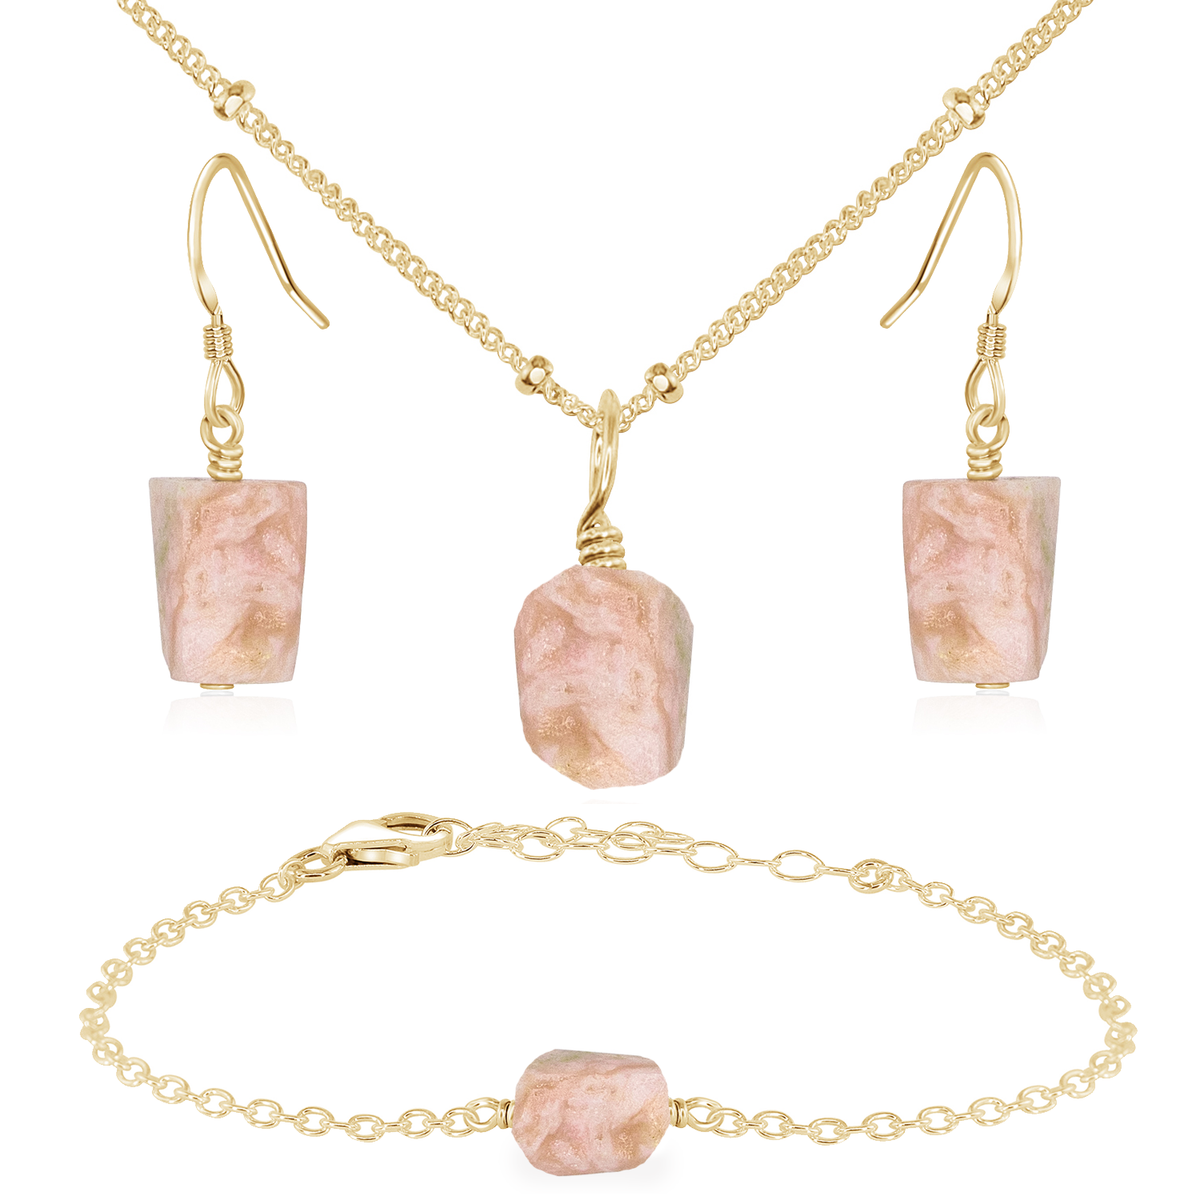 Raw Pink Peruvian Opal Crystal Jewellery Set - Raw Pink Peruvian Opal Crystal Jewellery Set - 14k Gold Fill / Satellite / Necklace & Earrings & Bracelet - Luna Tide Handmade Crystal Jewellery